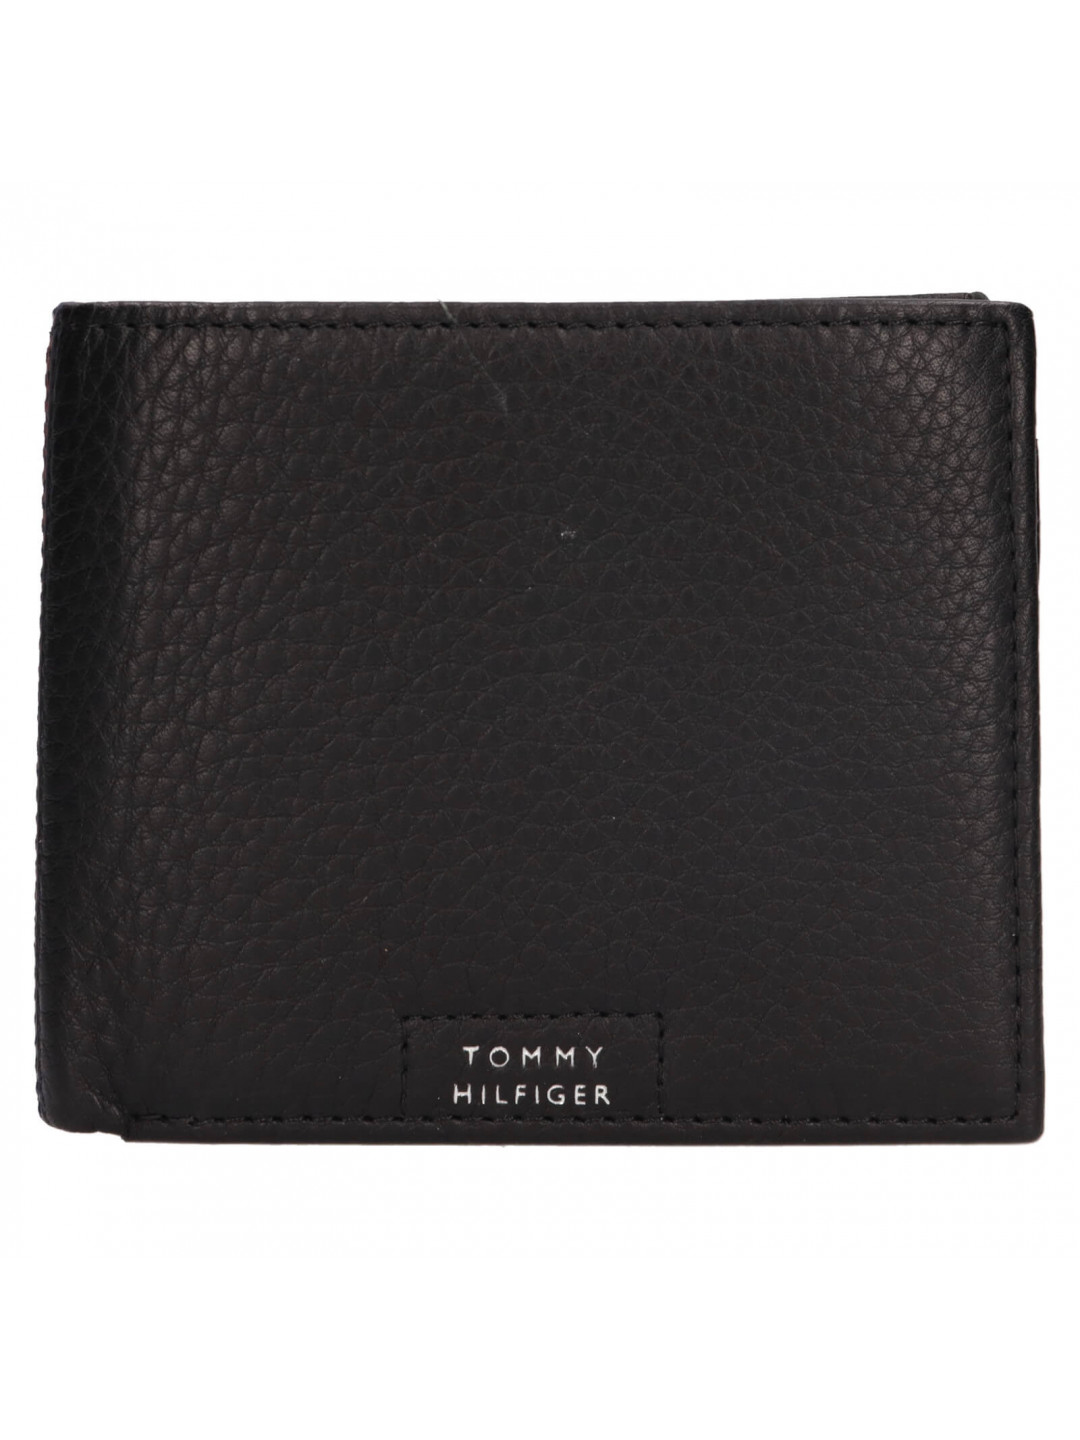 Pánská kožená peněženka Tommy Hilfiger Vood – černá